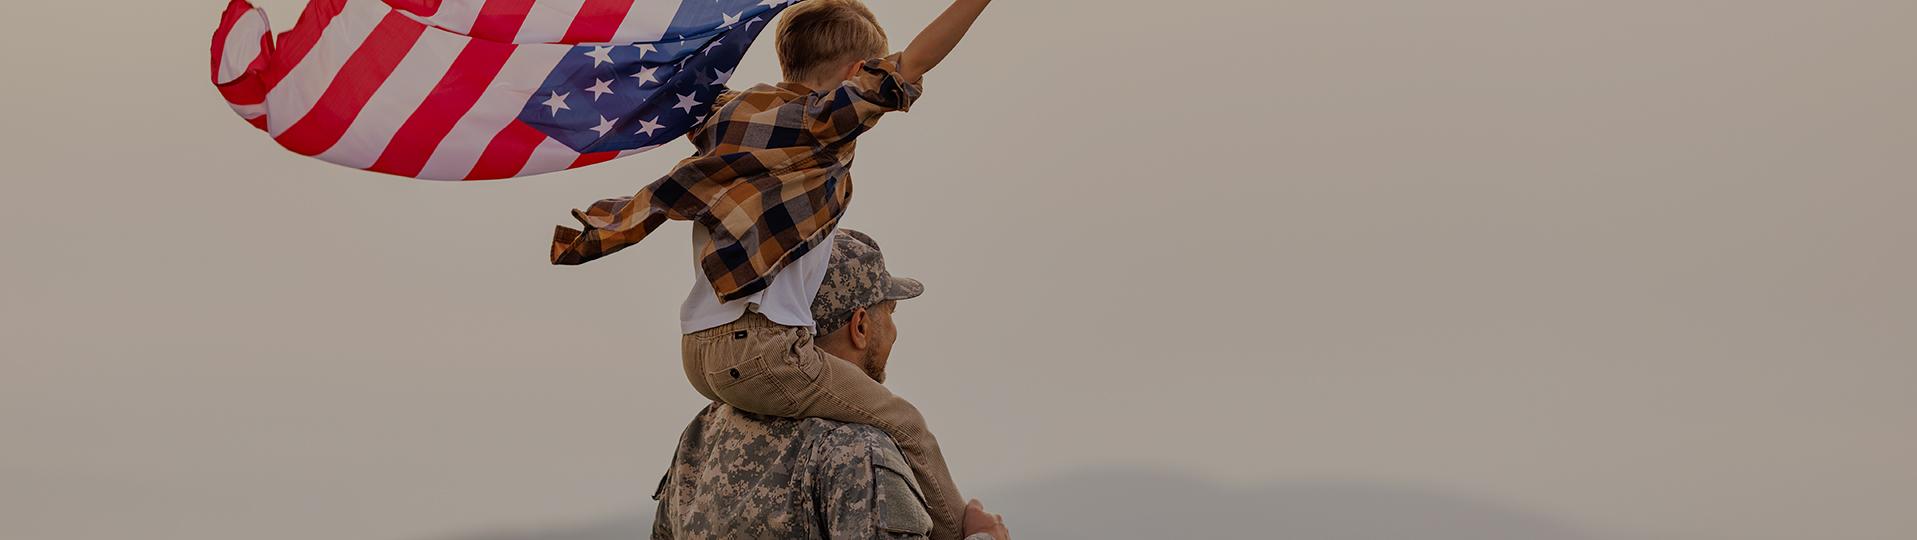 Un soldado sostiene orgullosamente a su hijo sobre sus hombros, el niño ondea una bandera estadounidense, lo que simboliza la esperanza del parole in place militar para su familia.